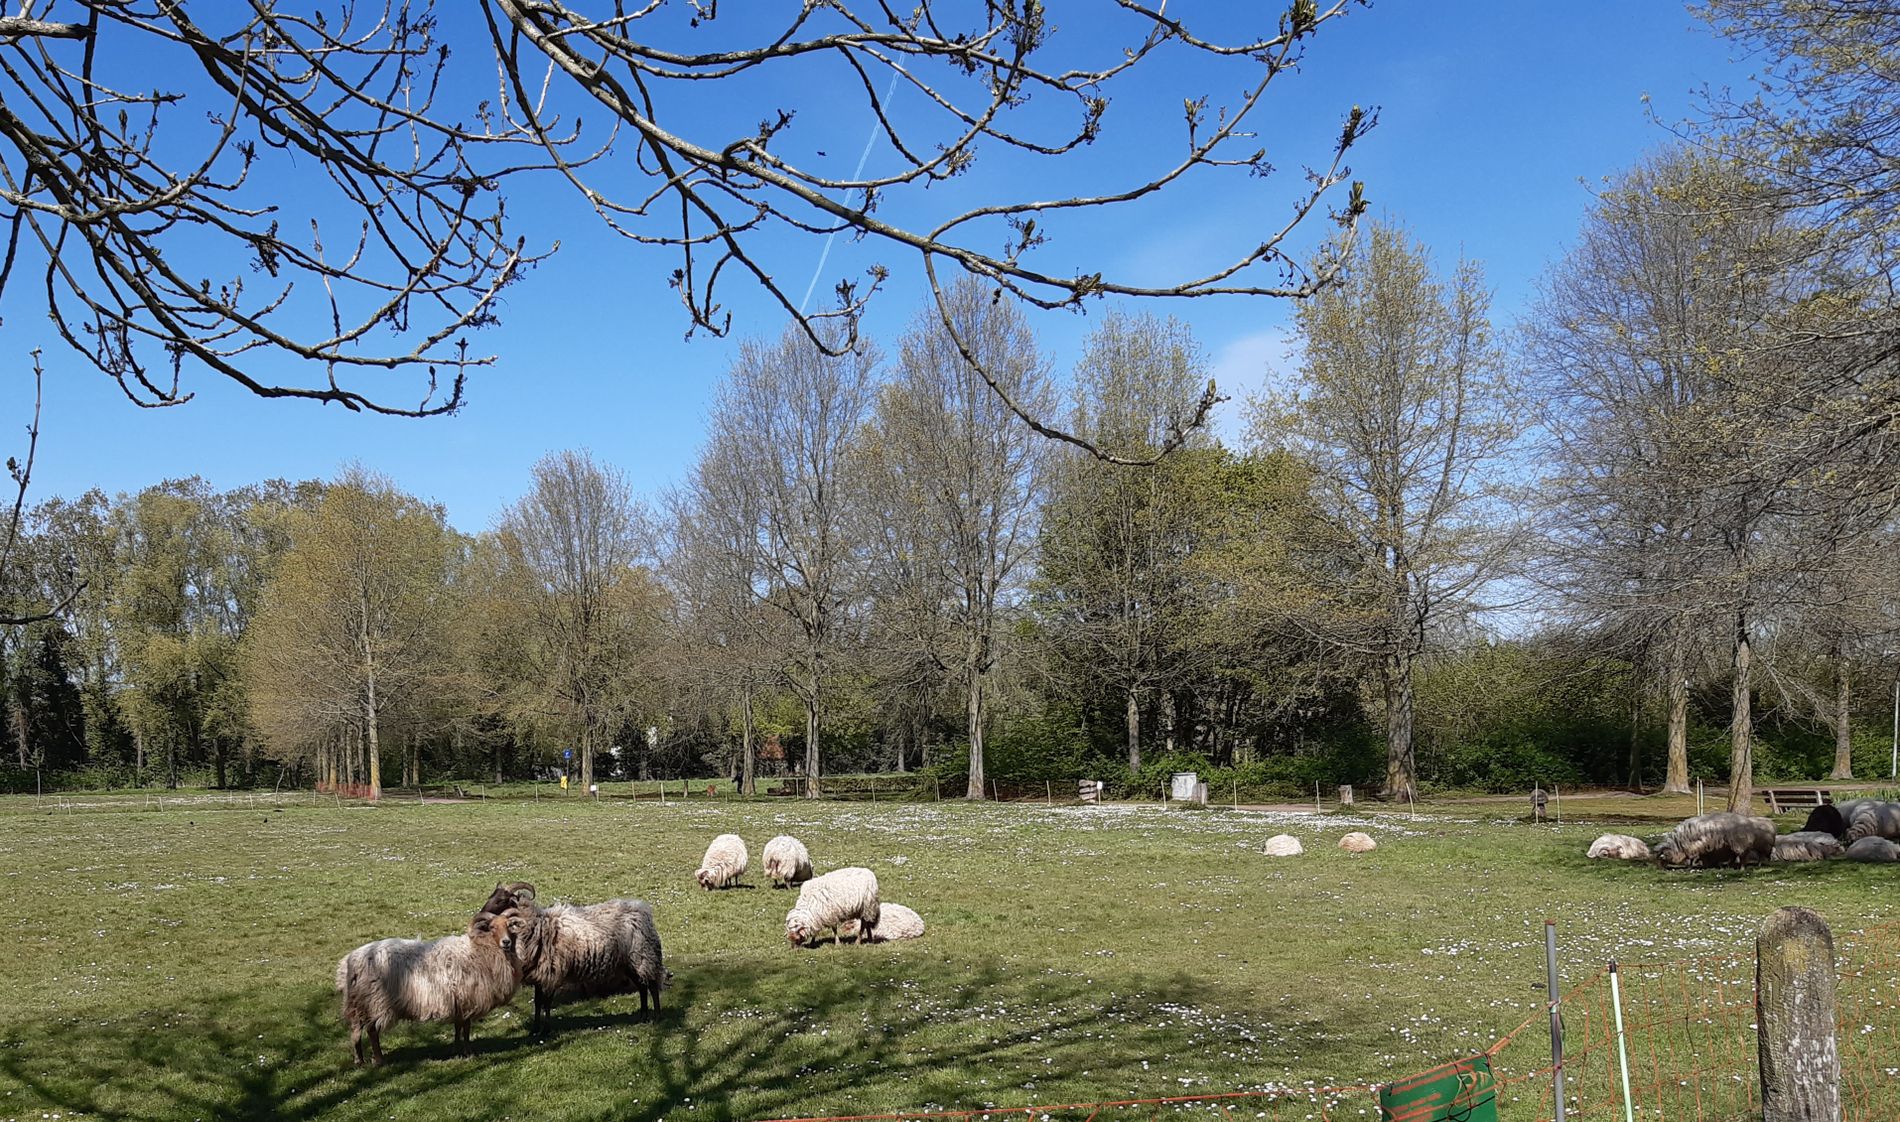 Heath sheep in the Vlierpark Deurne